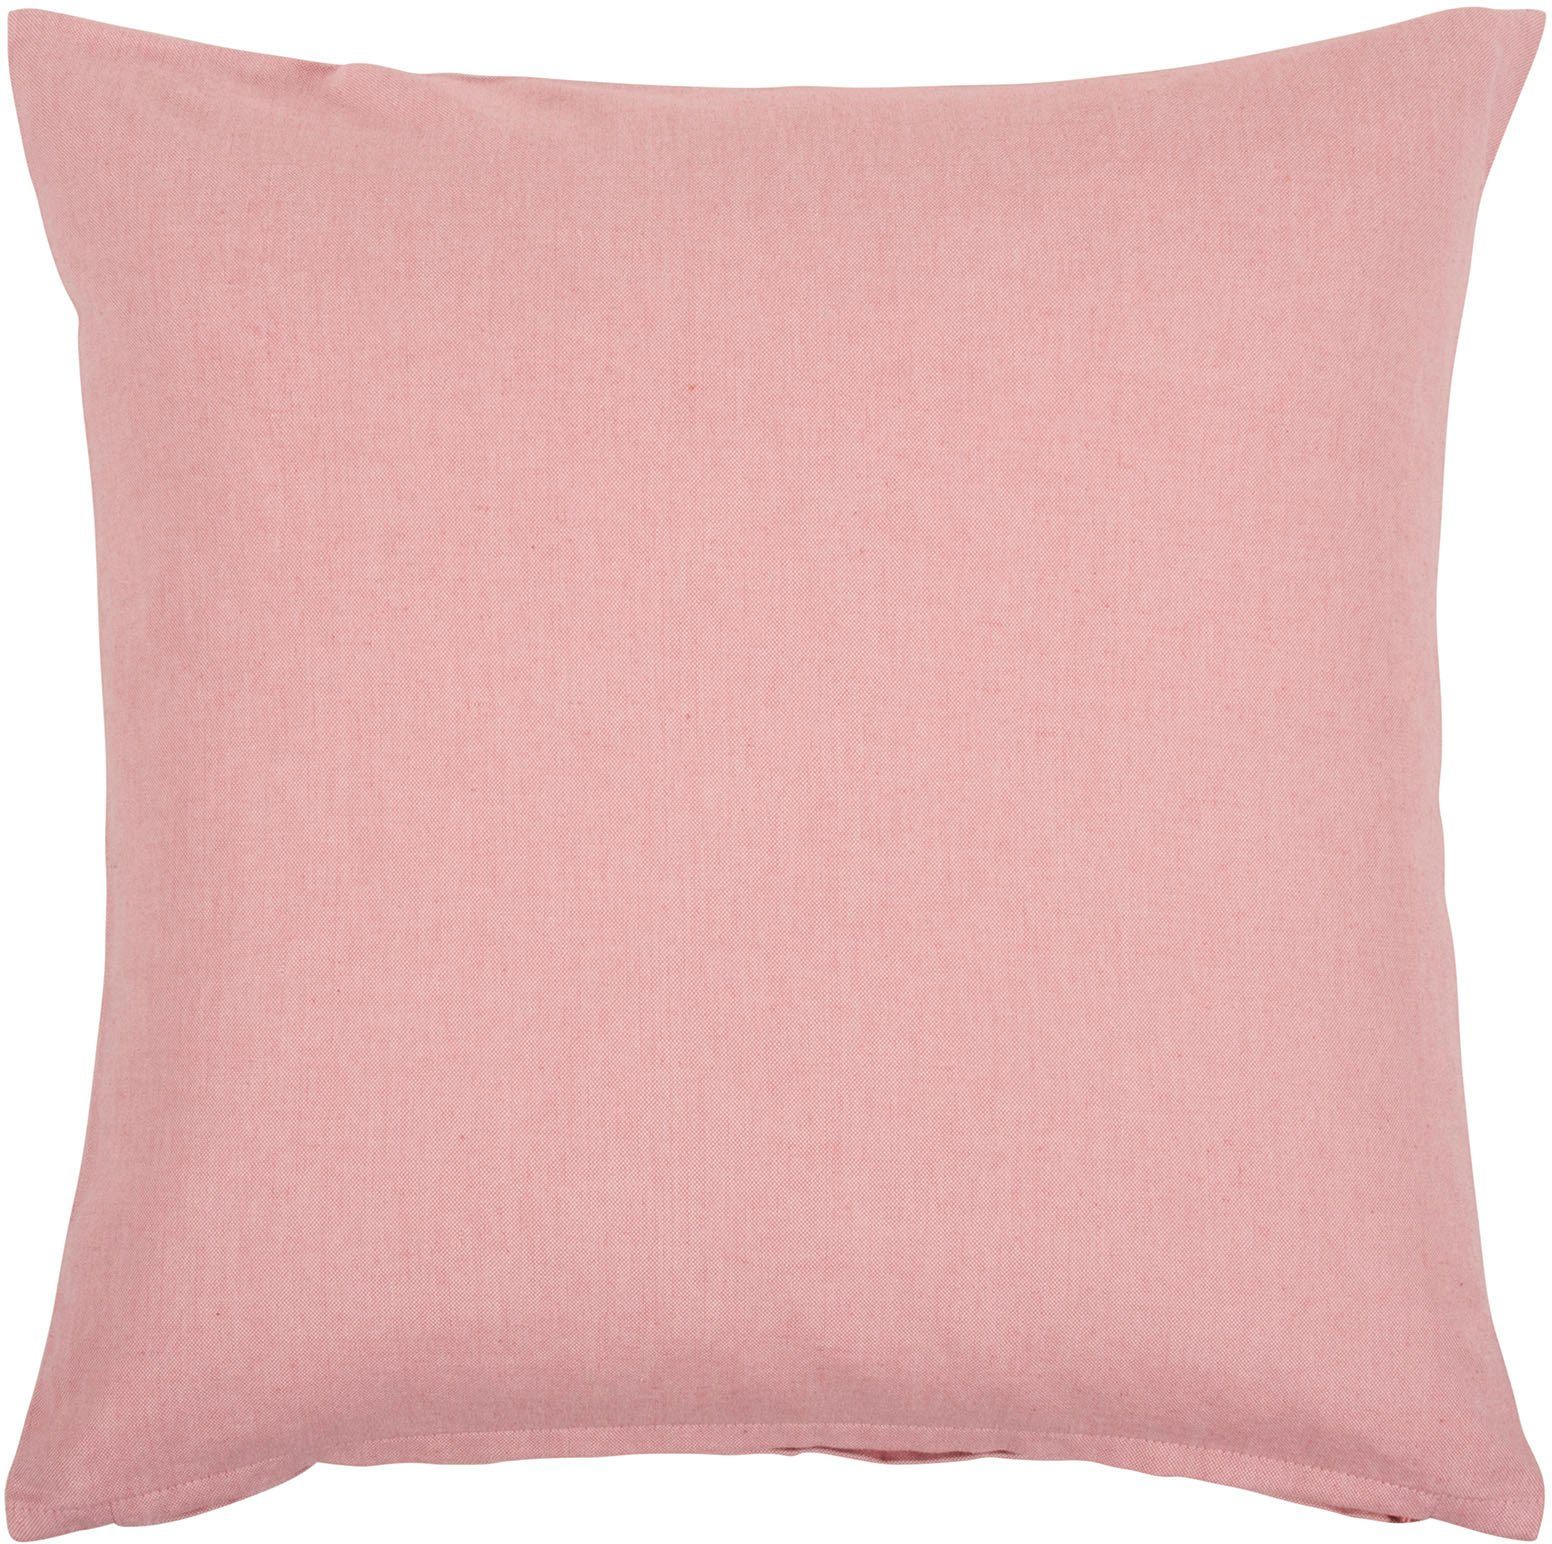 PAD Dekokissen Leda, einzigartiges Design, Kissenhülle ohne Füllung, 1 Stück pink